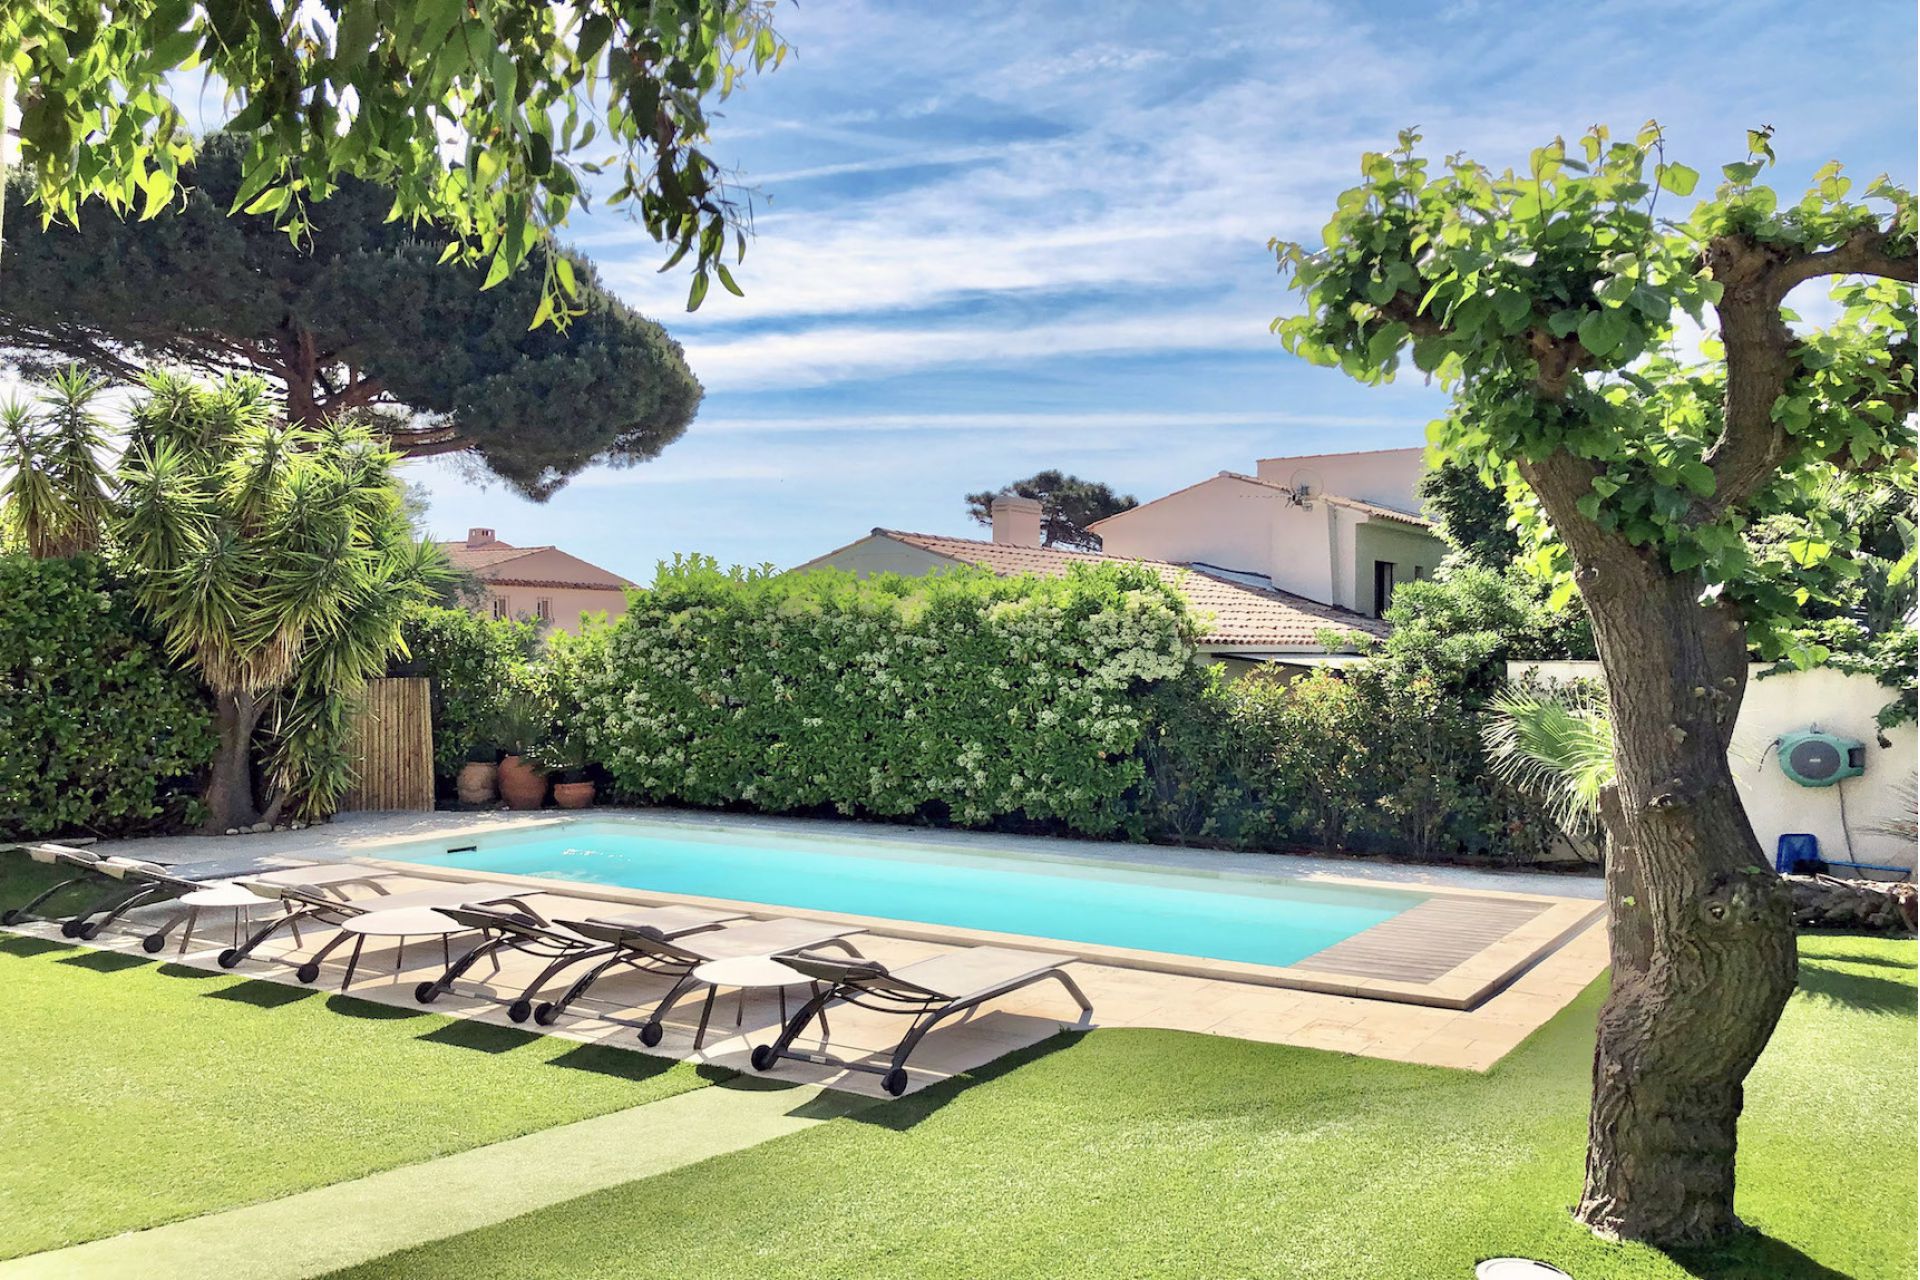 Méditerranée Location Villa with Private pool in Sainte-Maxime, Côte d'Azur